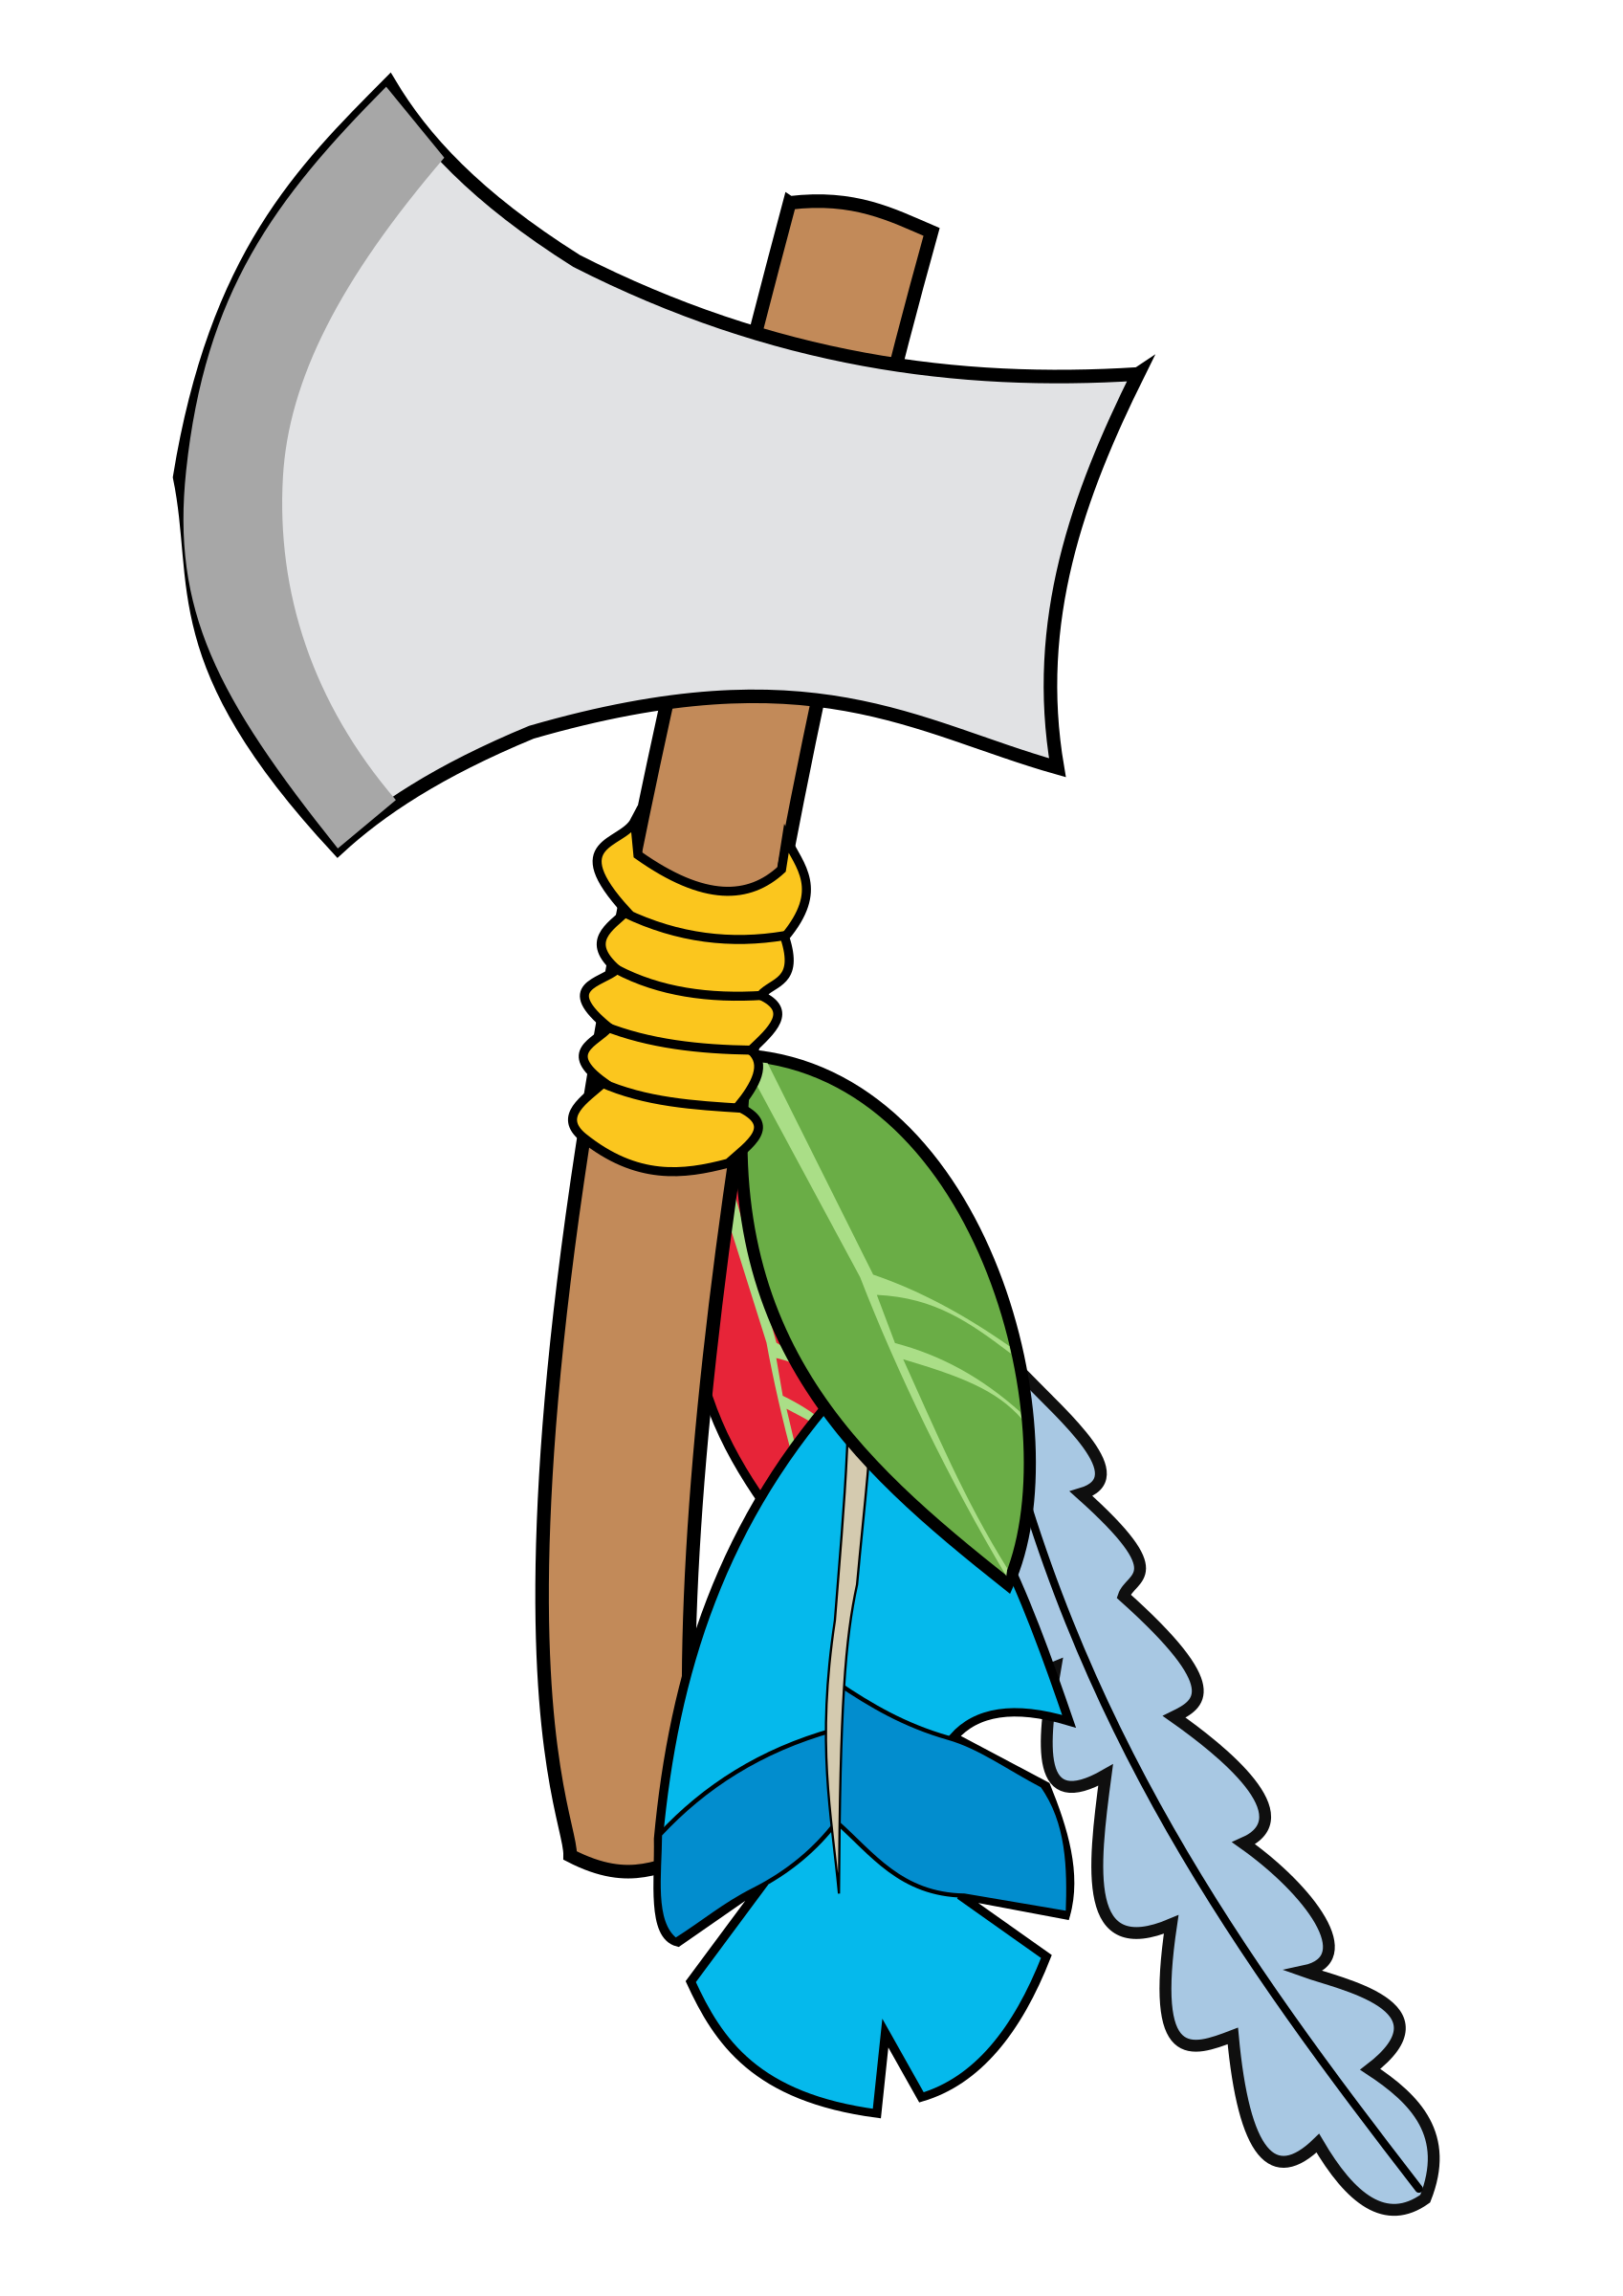 Indian axe